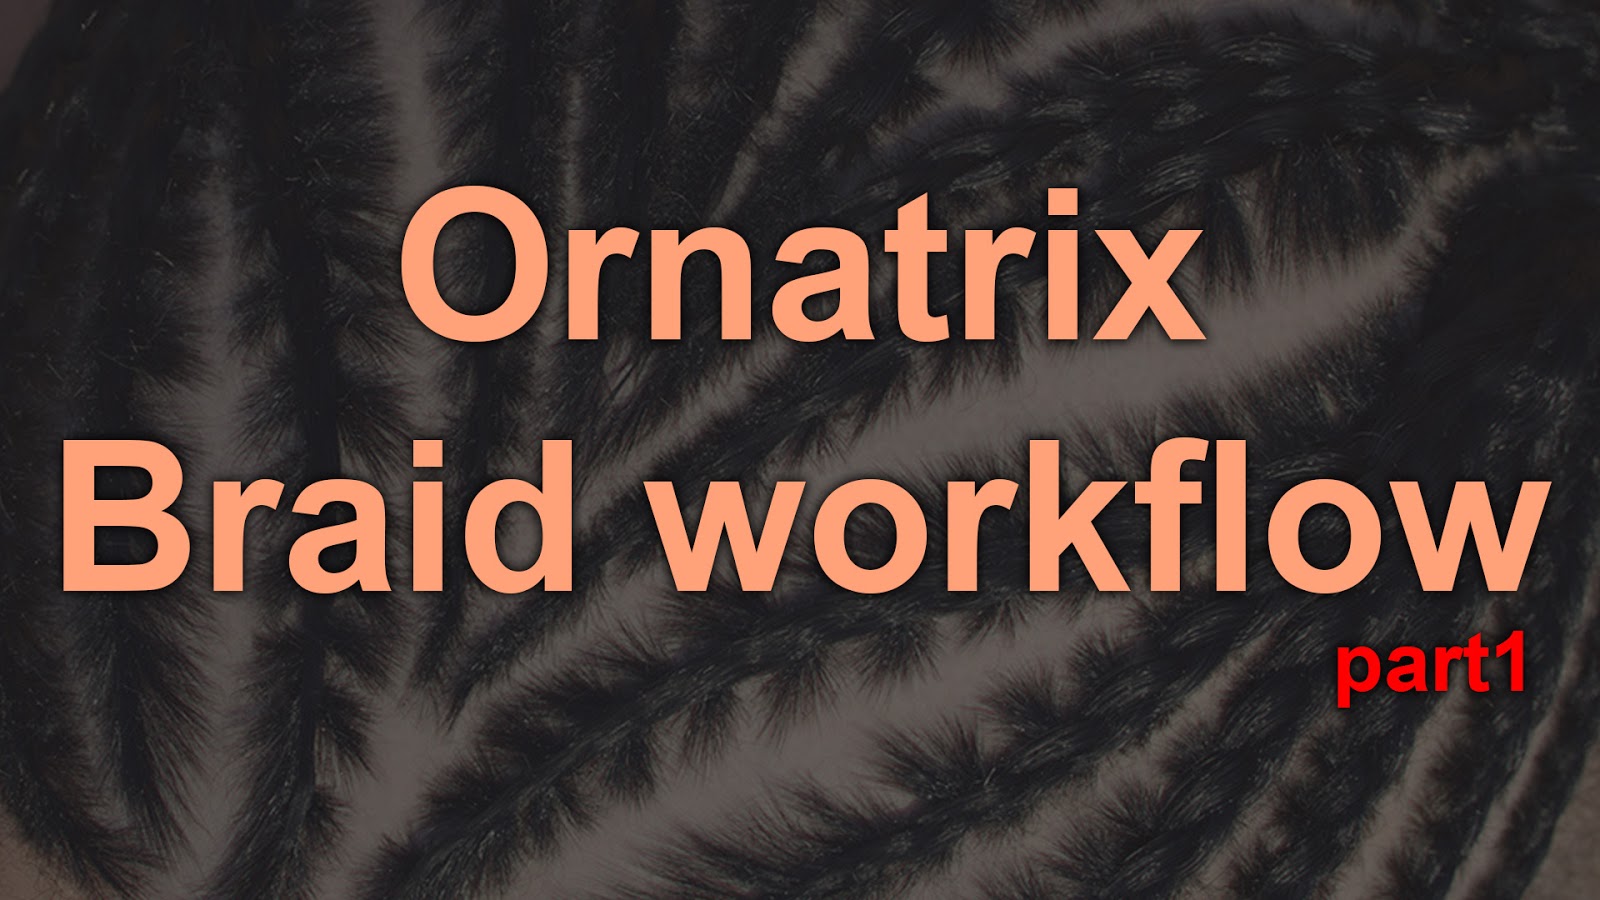 ornatrix_braid_workflpw_p1_youtube_logo.jpg